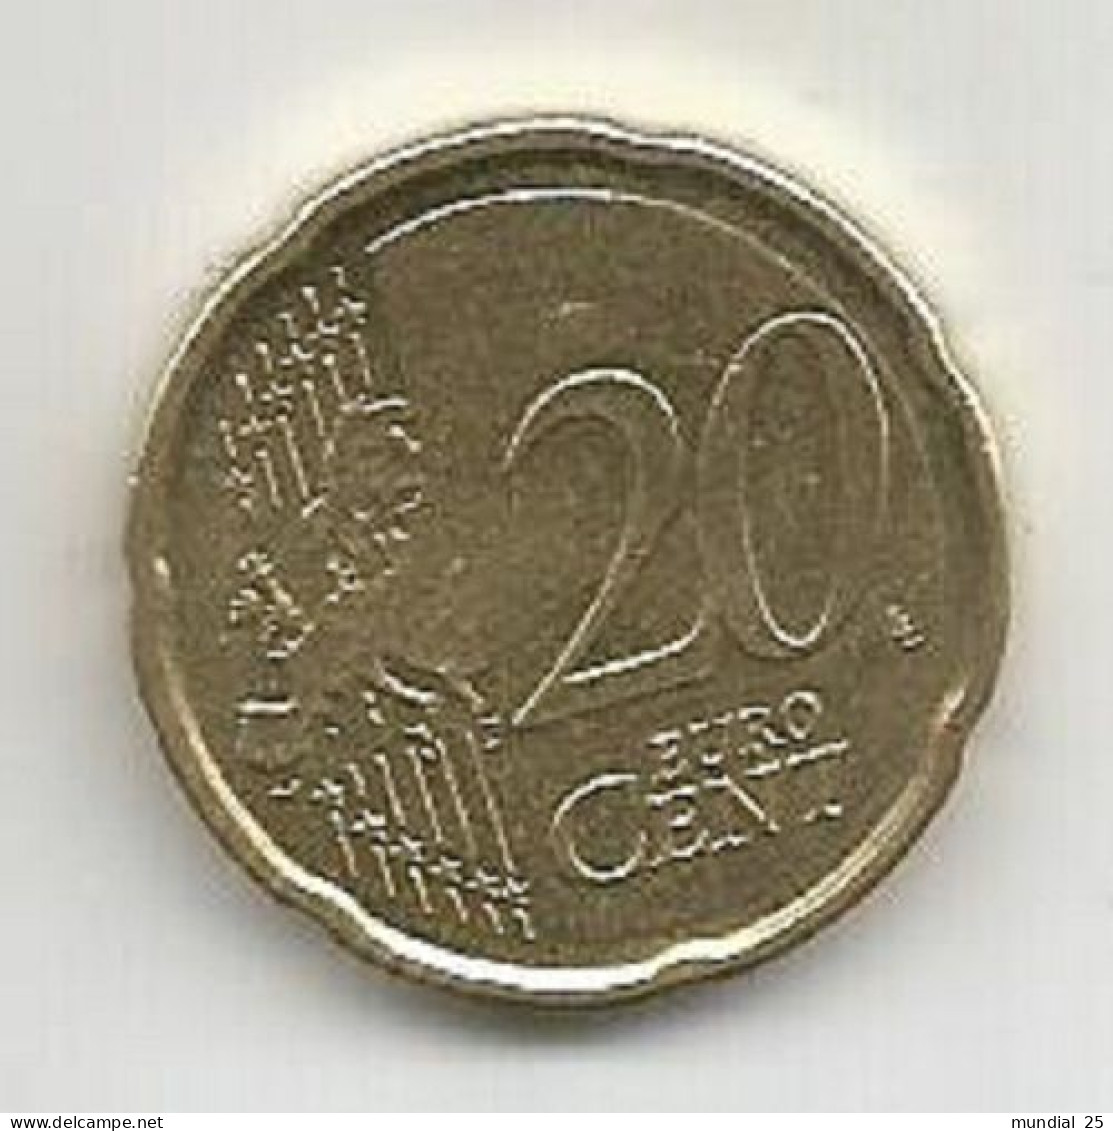 BELGIUM 20 EURO CENT 2011 - Belgique